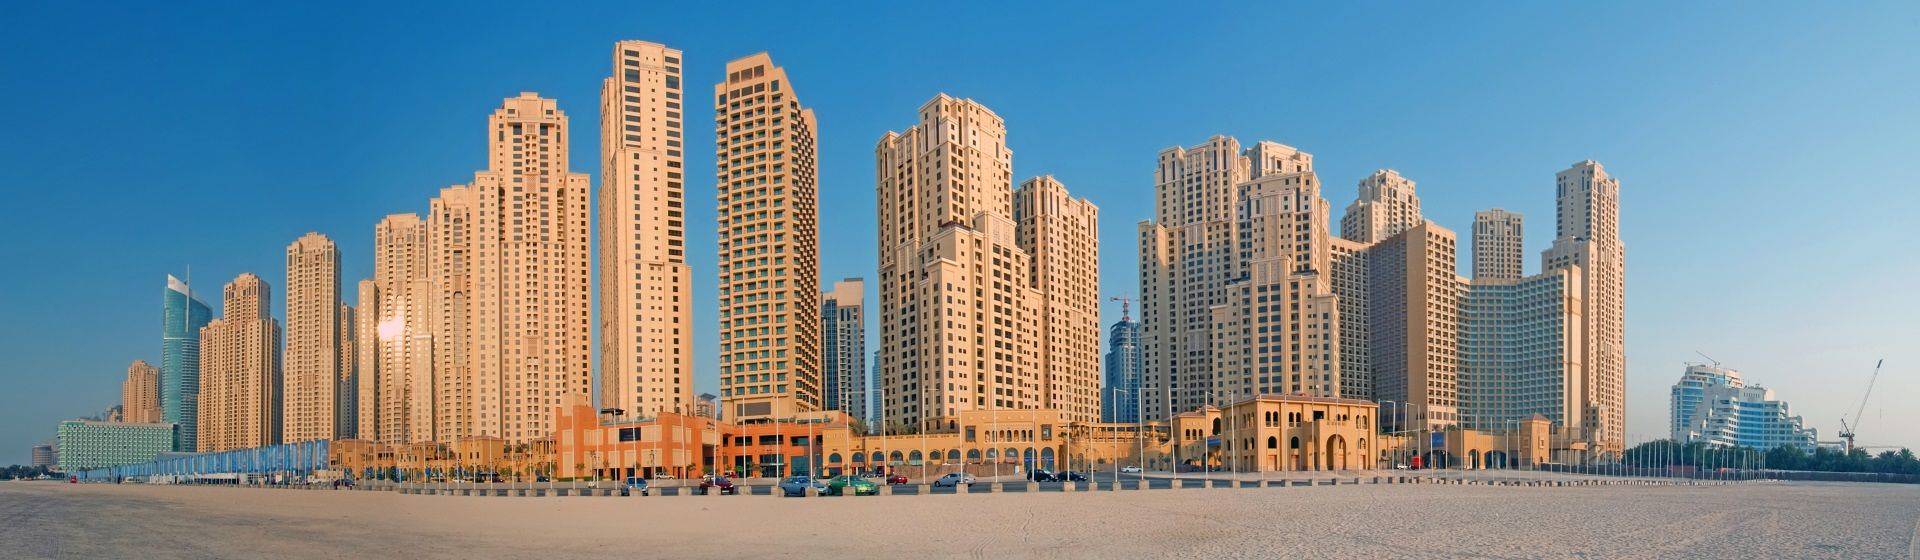 Holidays to Dubai Jumeirah Image